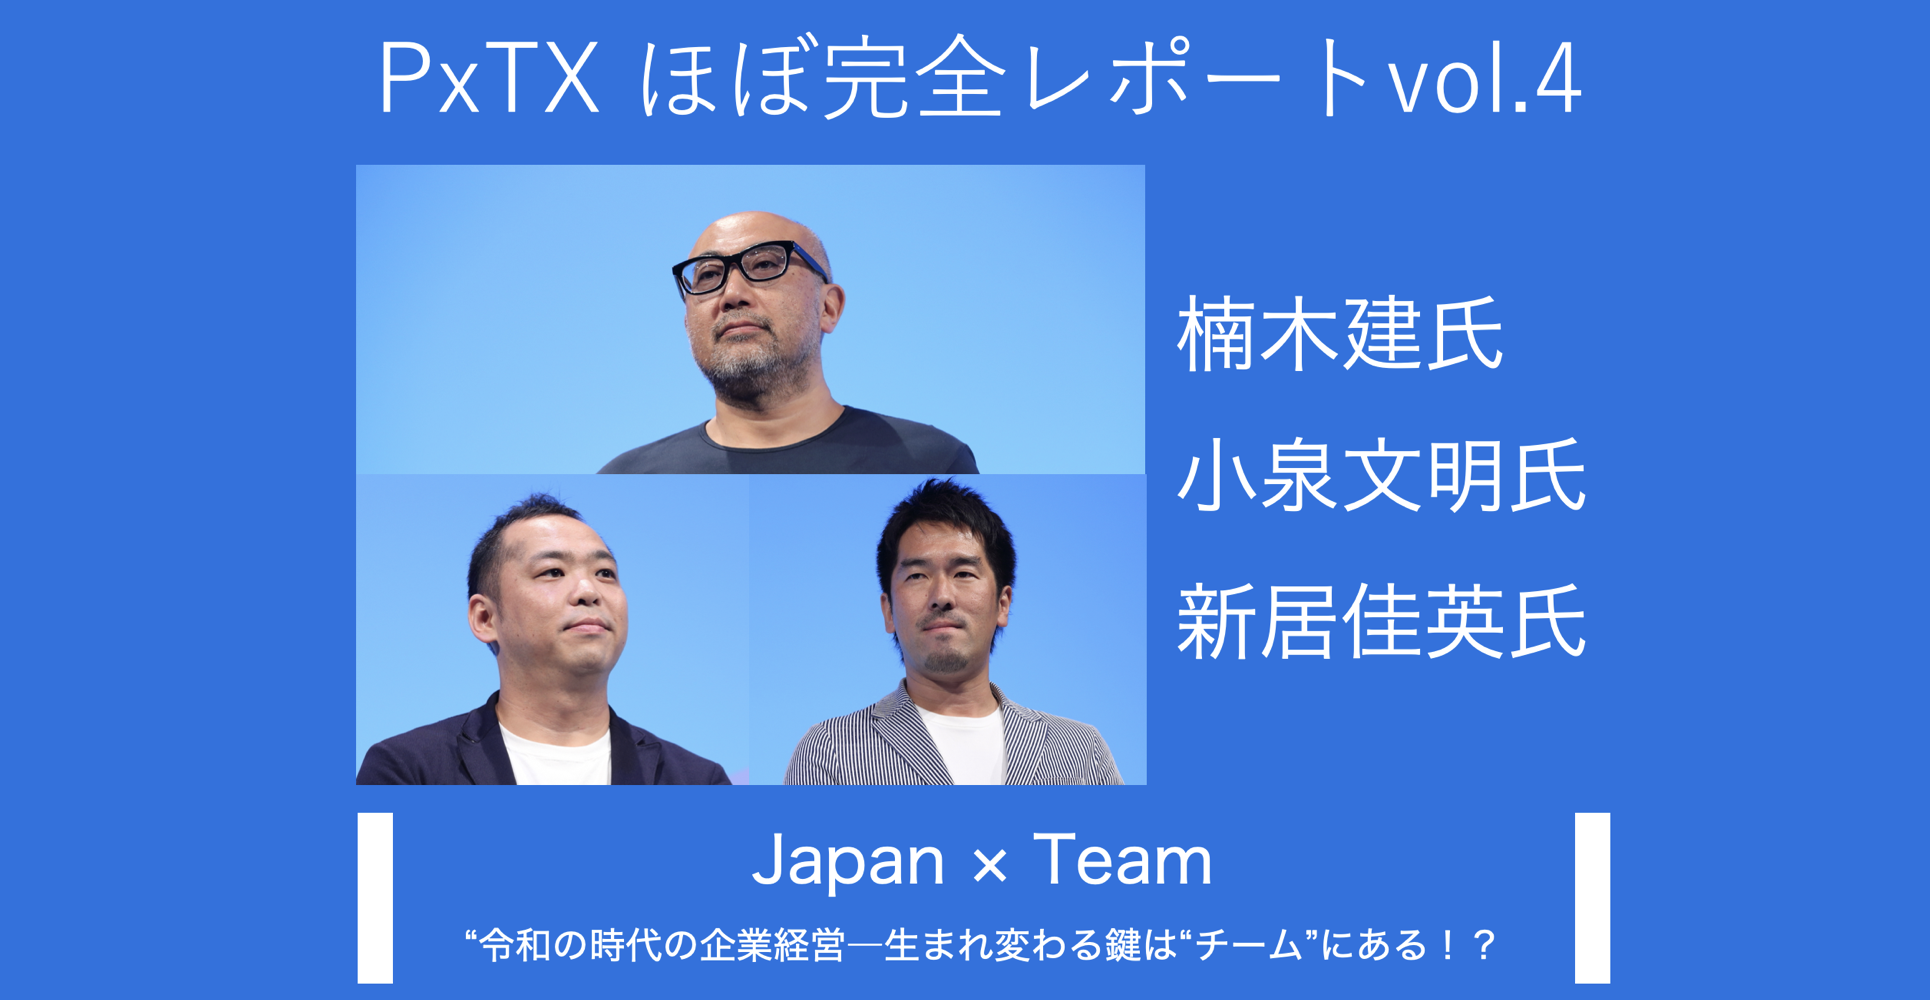 PxTXほぼ完全レポートvol.4 ジャパン×チーム『令和の時代の企業経営 